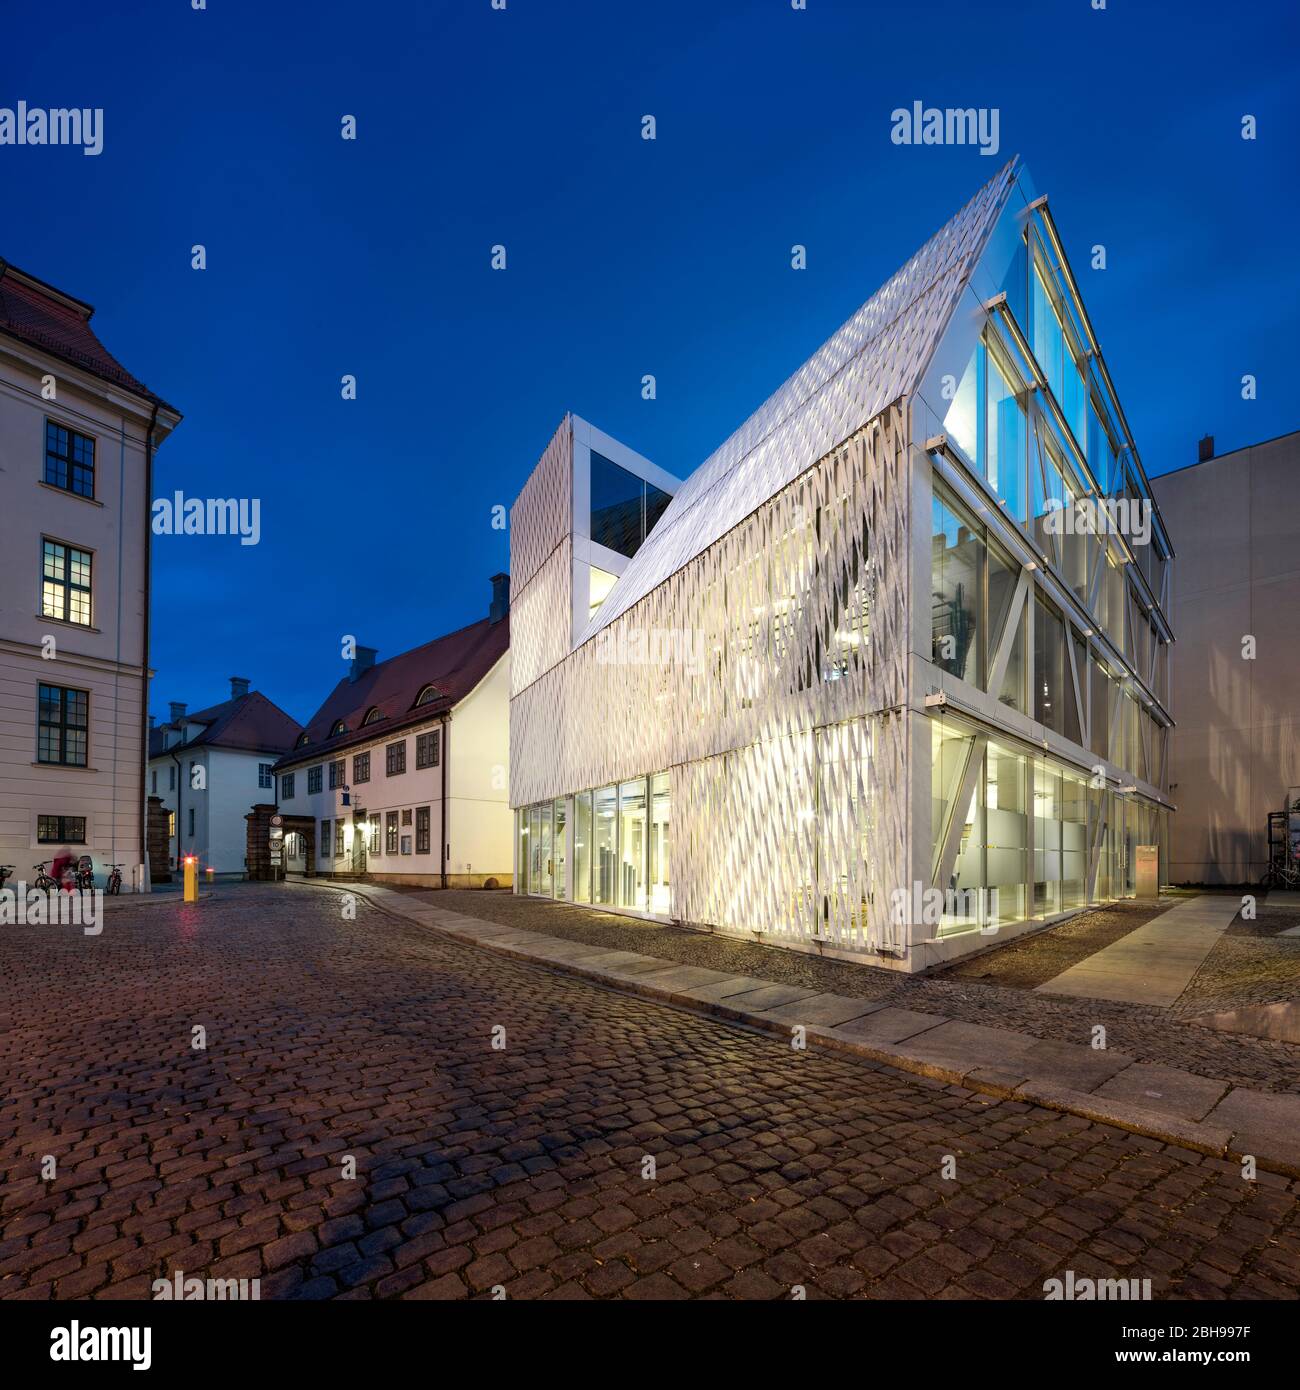 Fondazione Culturale illuminata del Governo Federale, al crepuscolo, Halle an der Sale, Sassonia-Anhalt, Germania Foto Stock